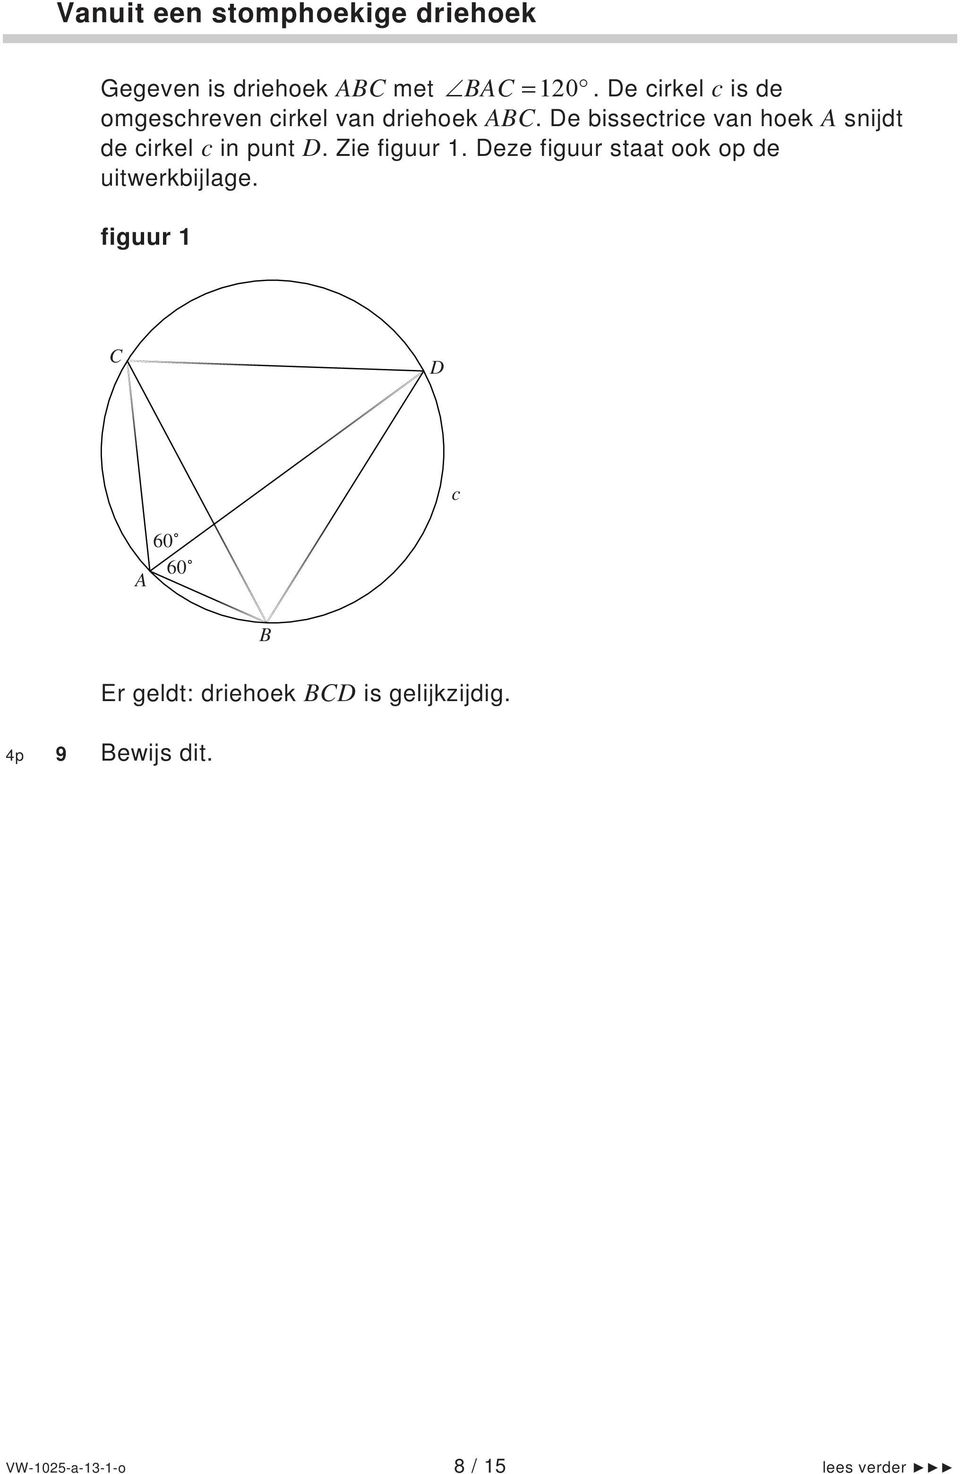 De bissectrice van hoek A snijdt de cirkel c in punt D. Zie figuur.